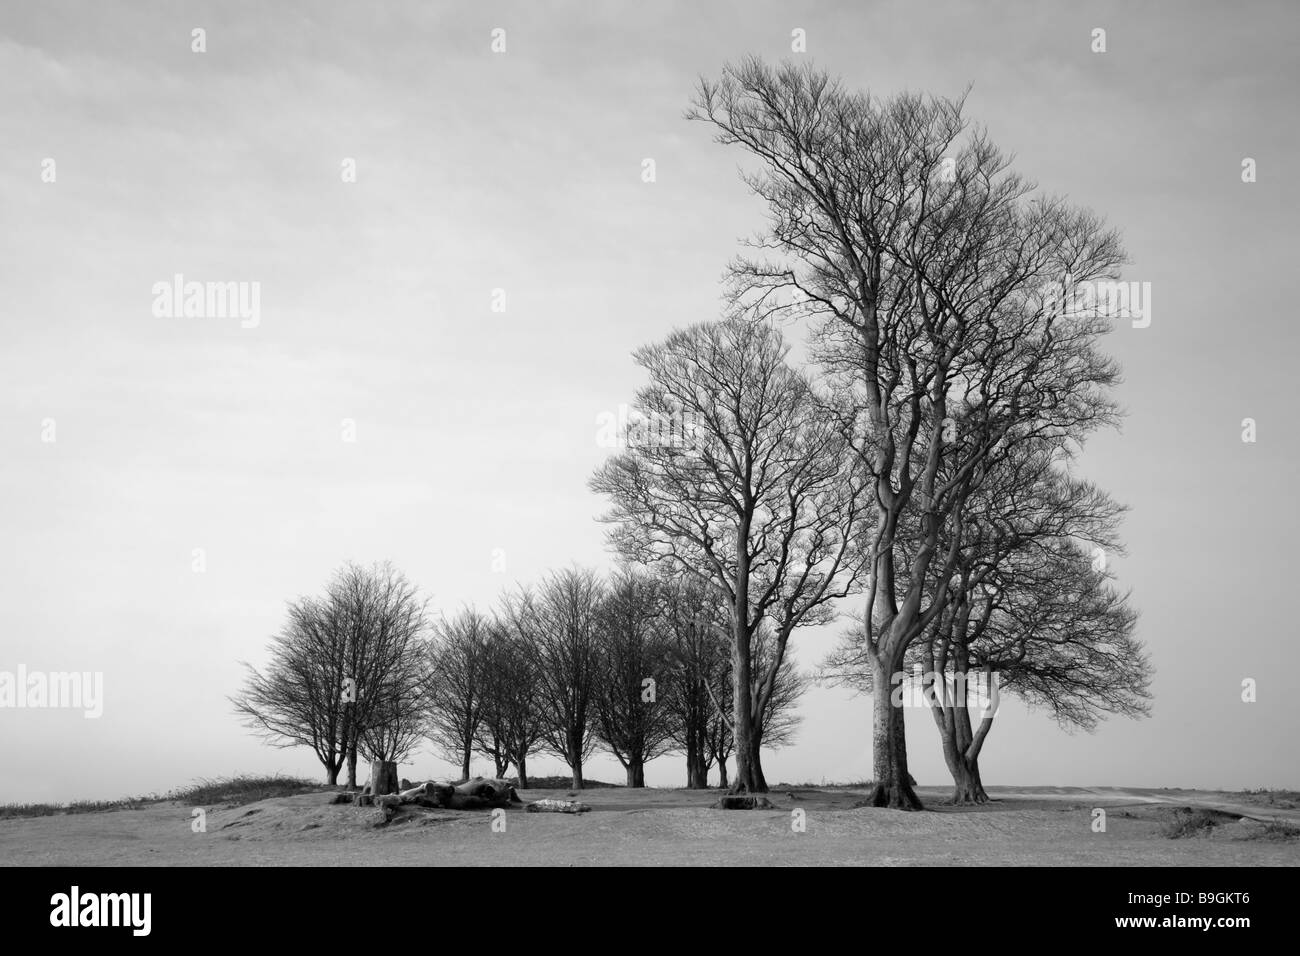 Immagine di un gruppo di faggi conosciuta come le Sette della sorella, Quantocks presi su un gelido mattino poco dopo l'alba. Foto Stock